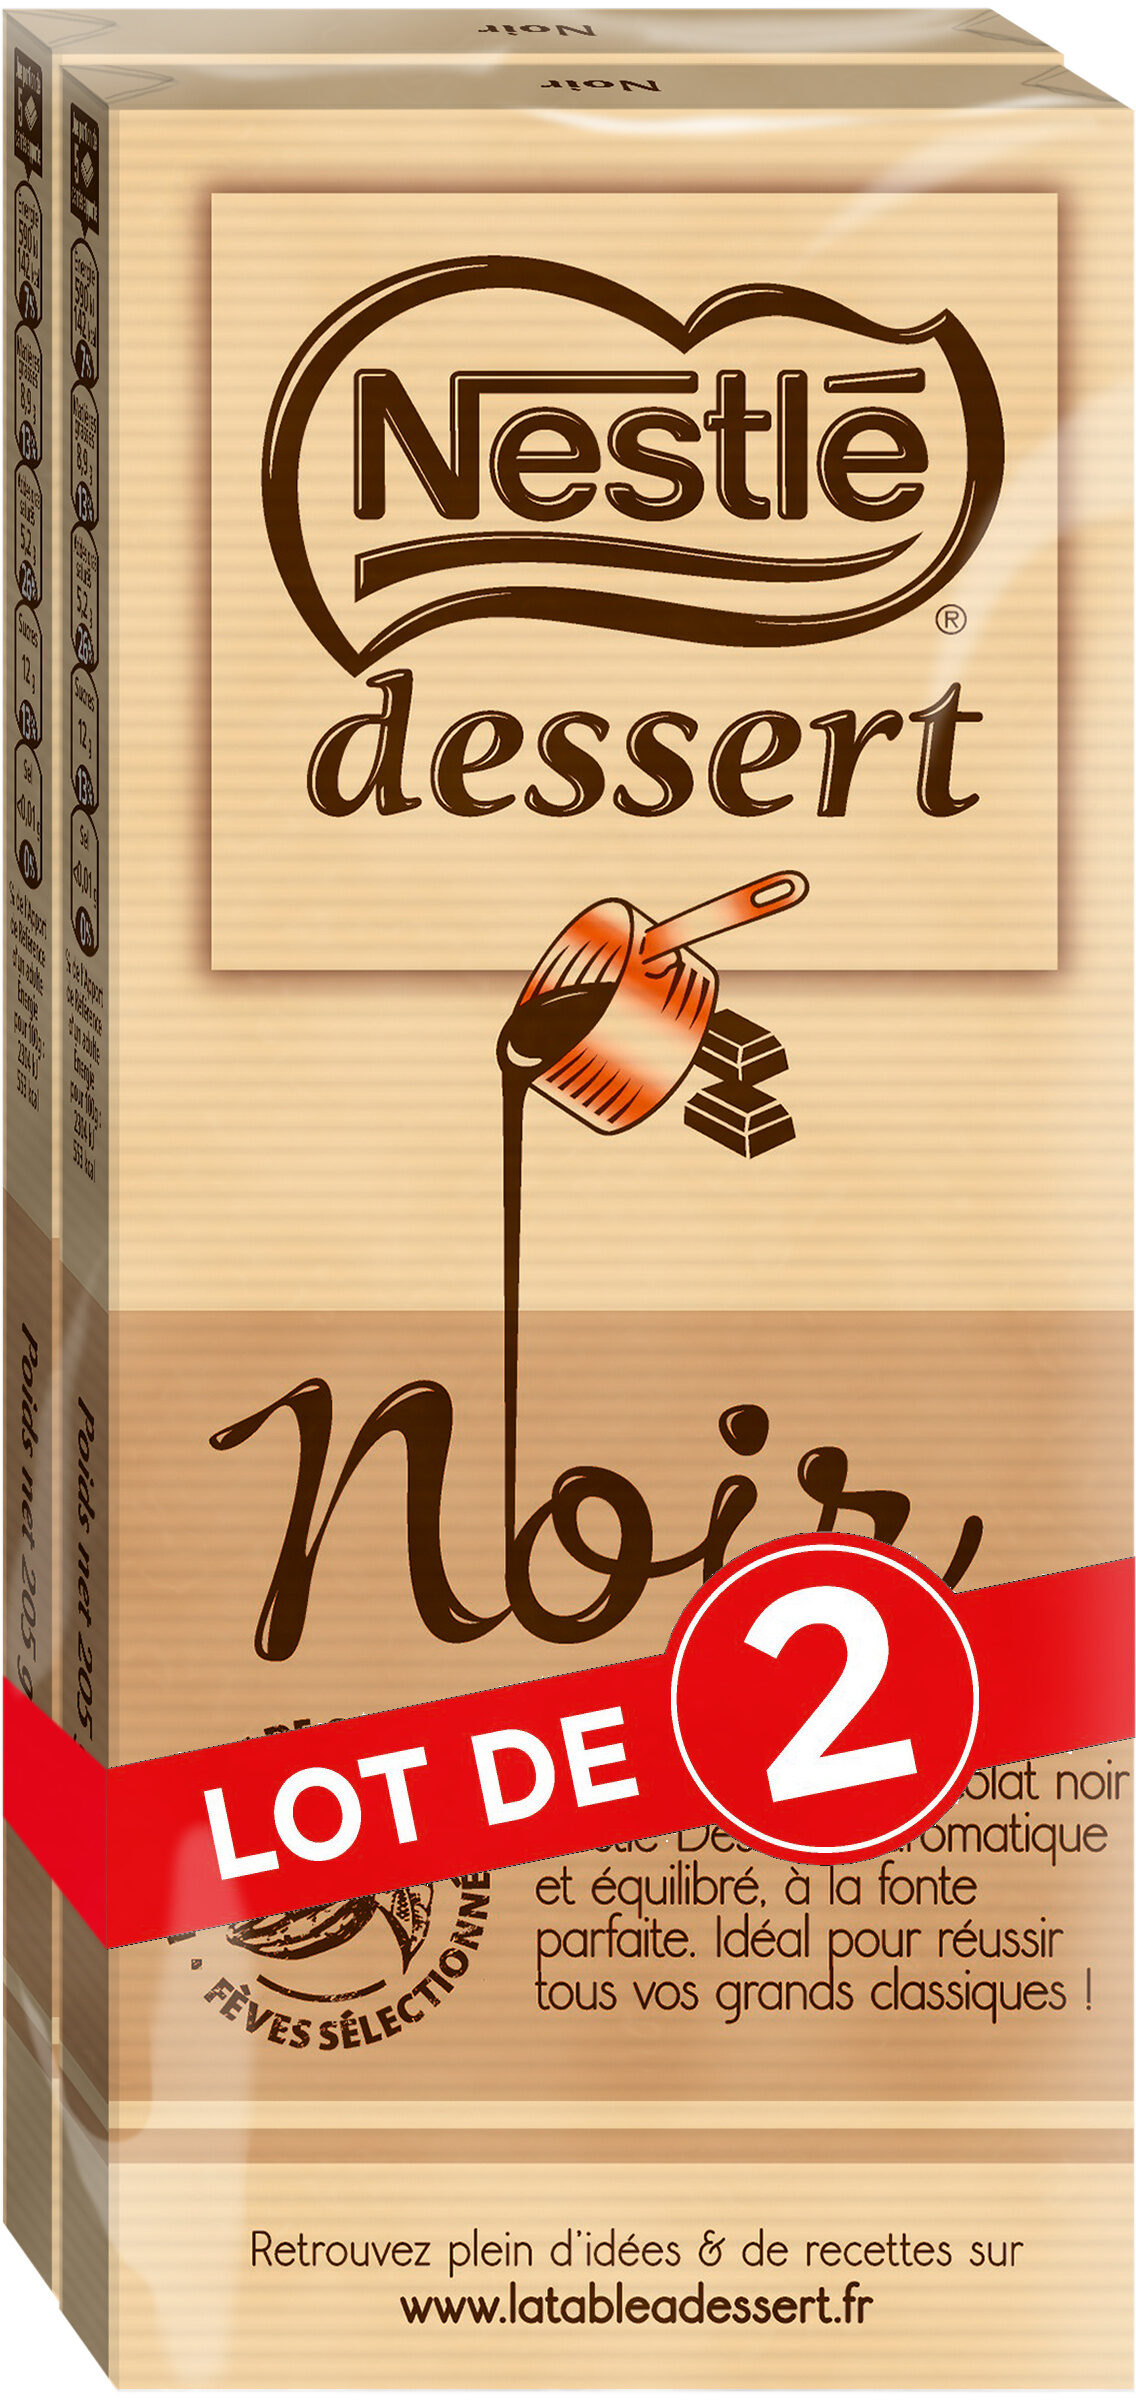 NESTLE DESSERT Chocolat Noir lot de 2x205g - Produit